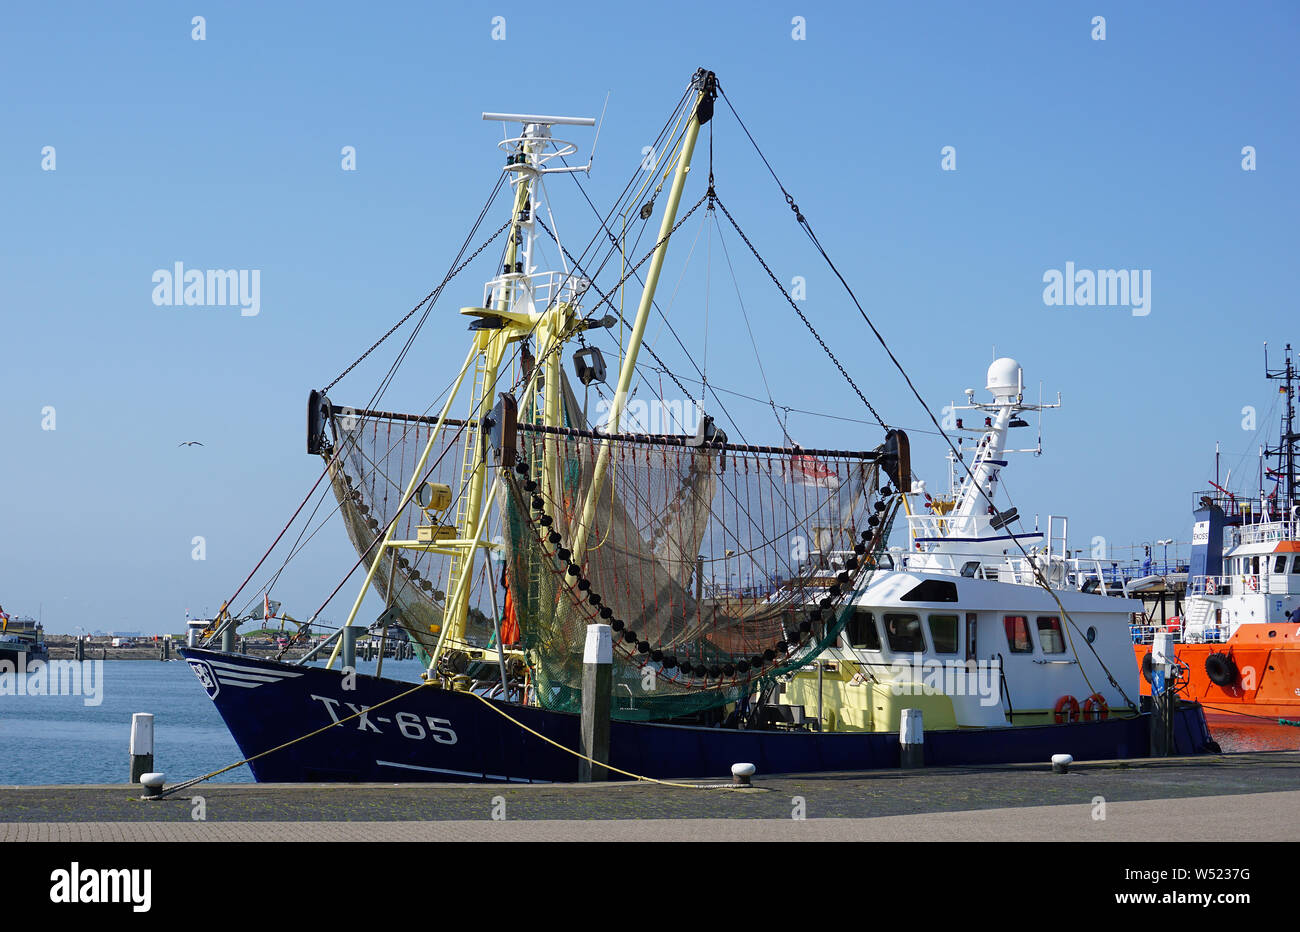 Bateau de pêche dans le port de Oudeschild sur l'île de Texel aux Pays-Bas.La Wadden mer des Wadden Banque D'Images